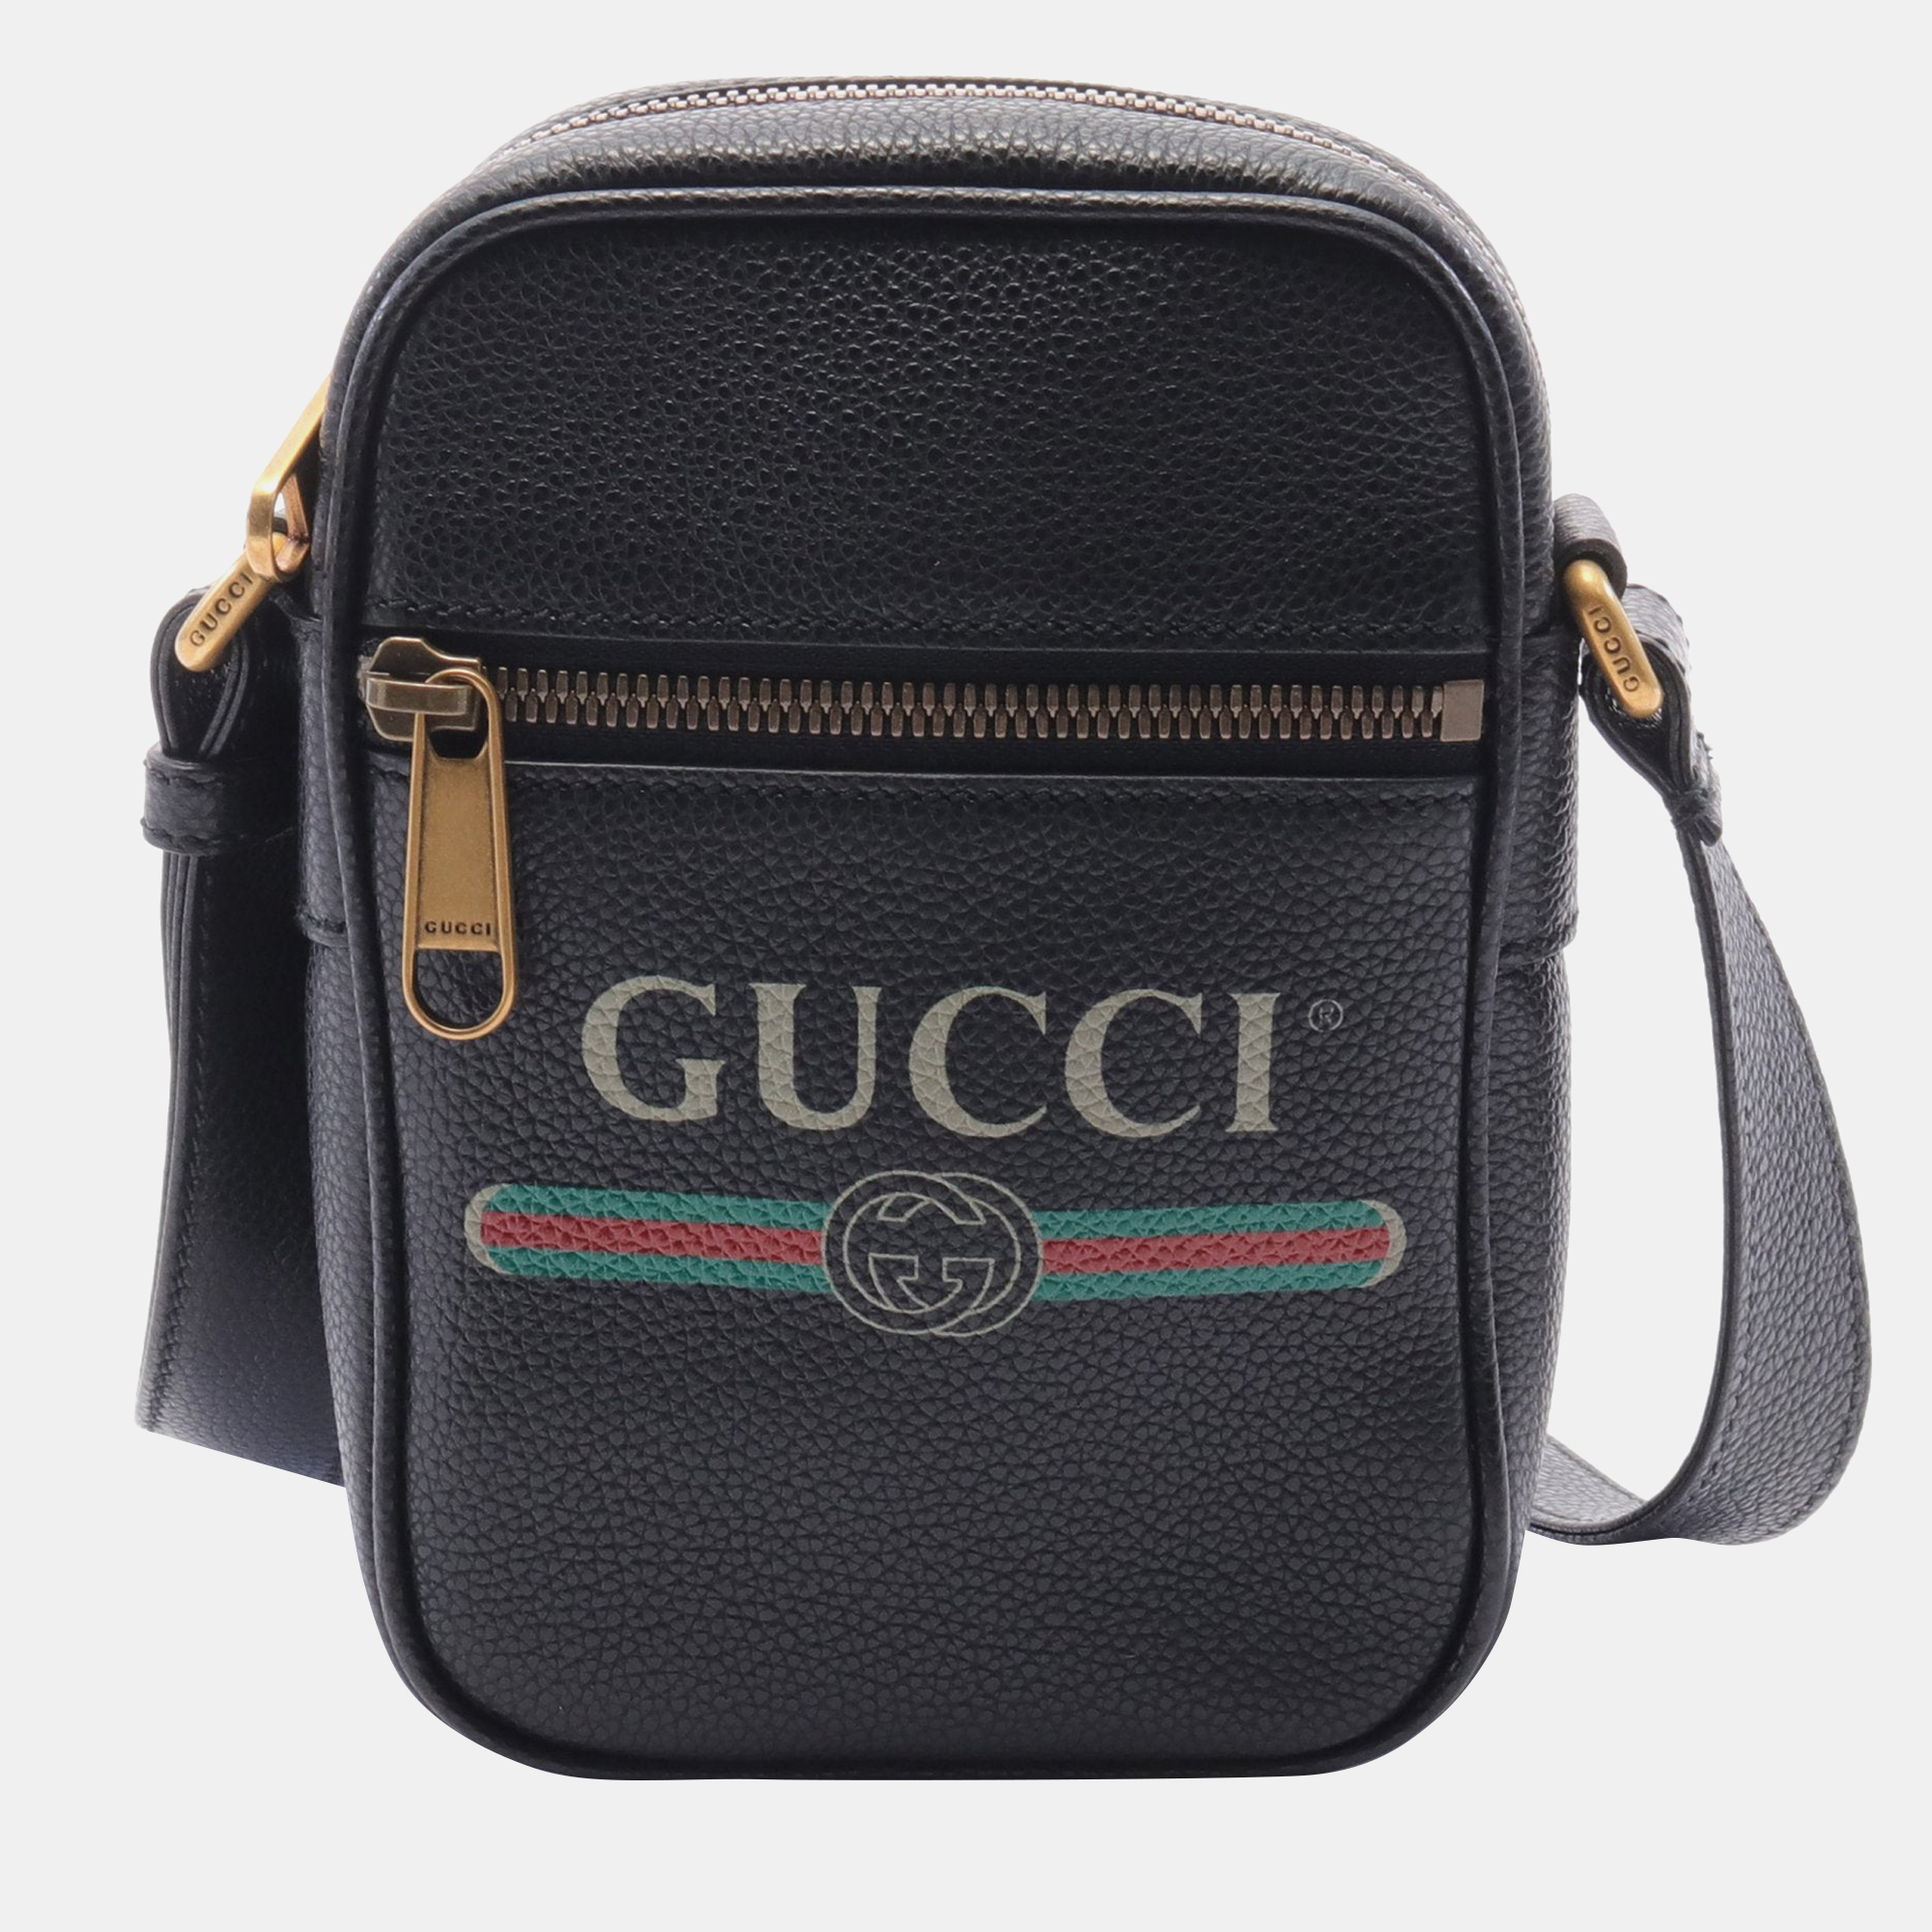 Pre-owned Gucci Webbing Line Shoulder Bag Leather Black Multicolor